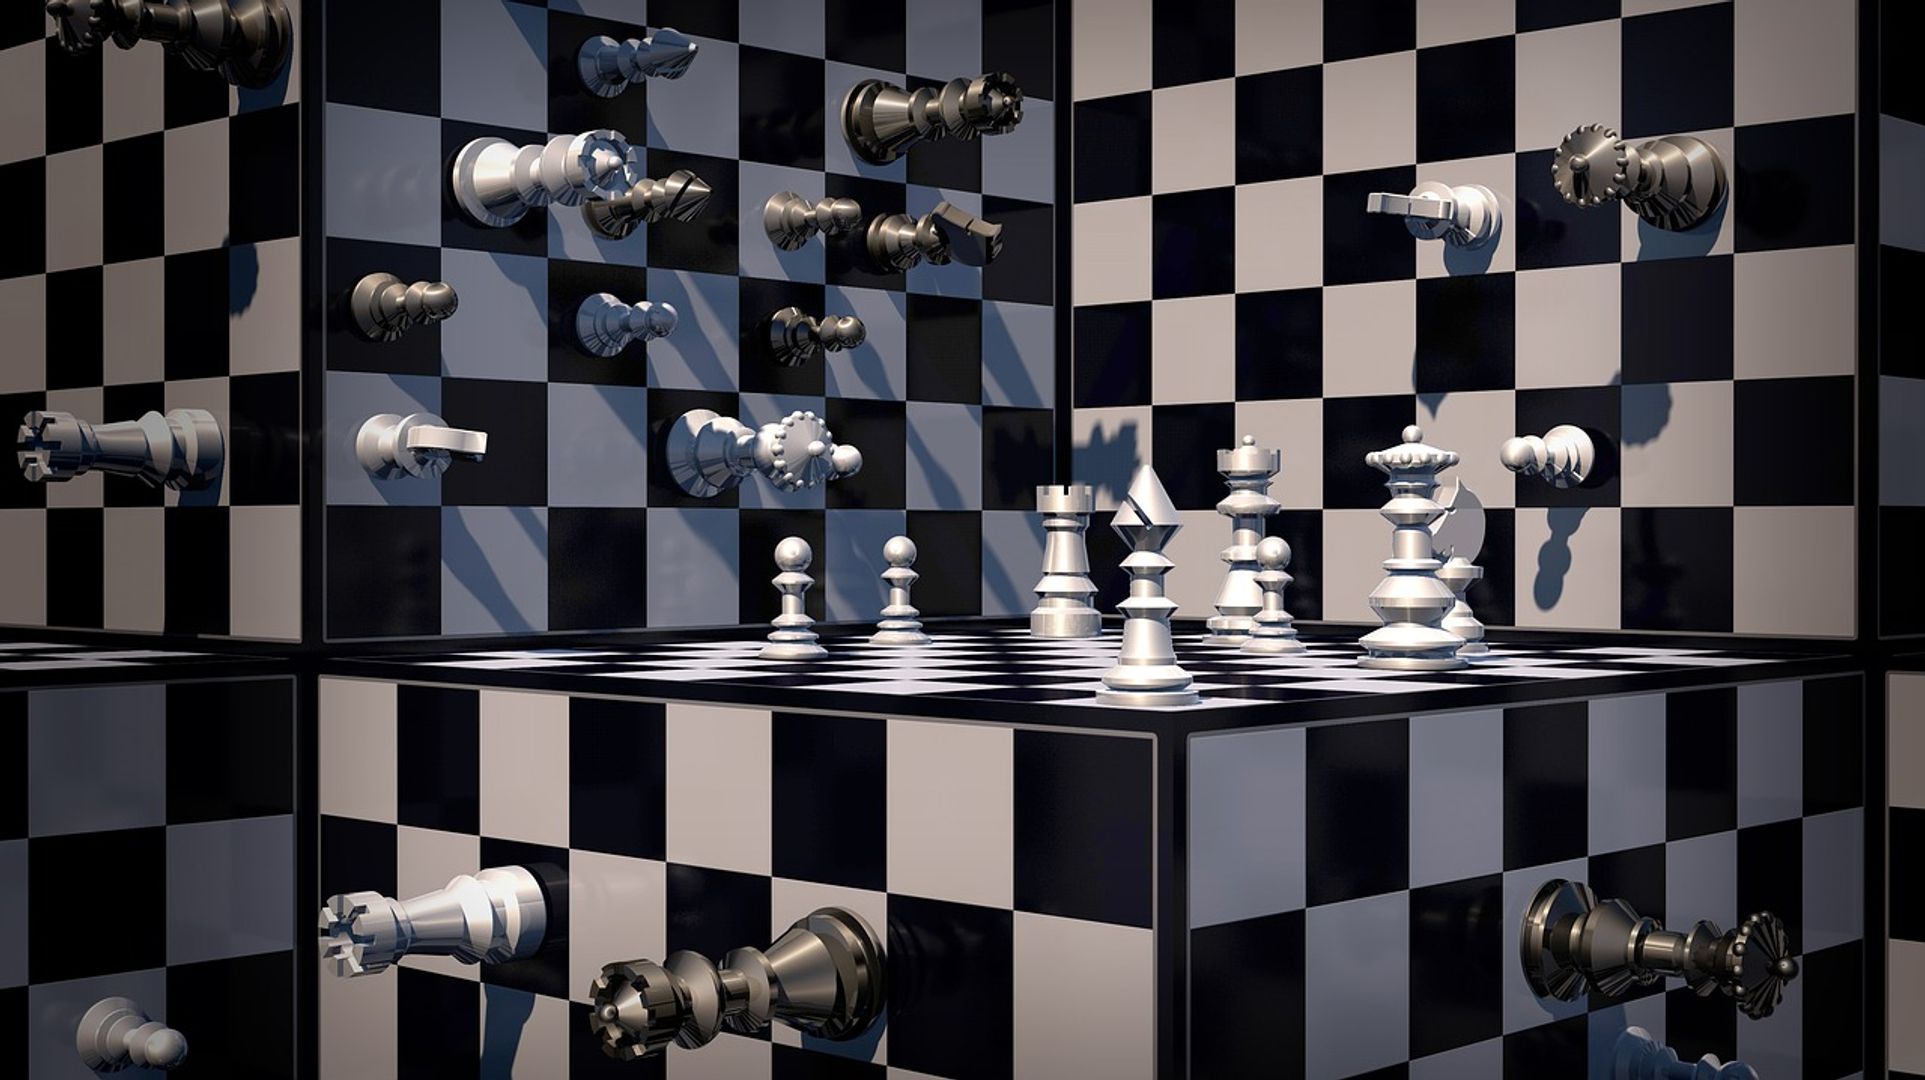 Vidím mřížku / šachovnici. Co to znamená?